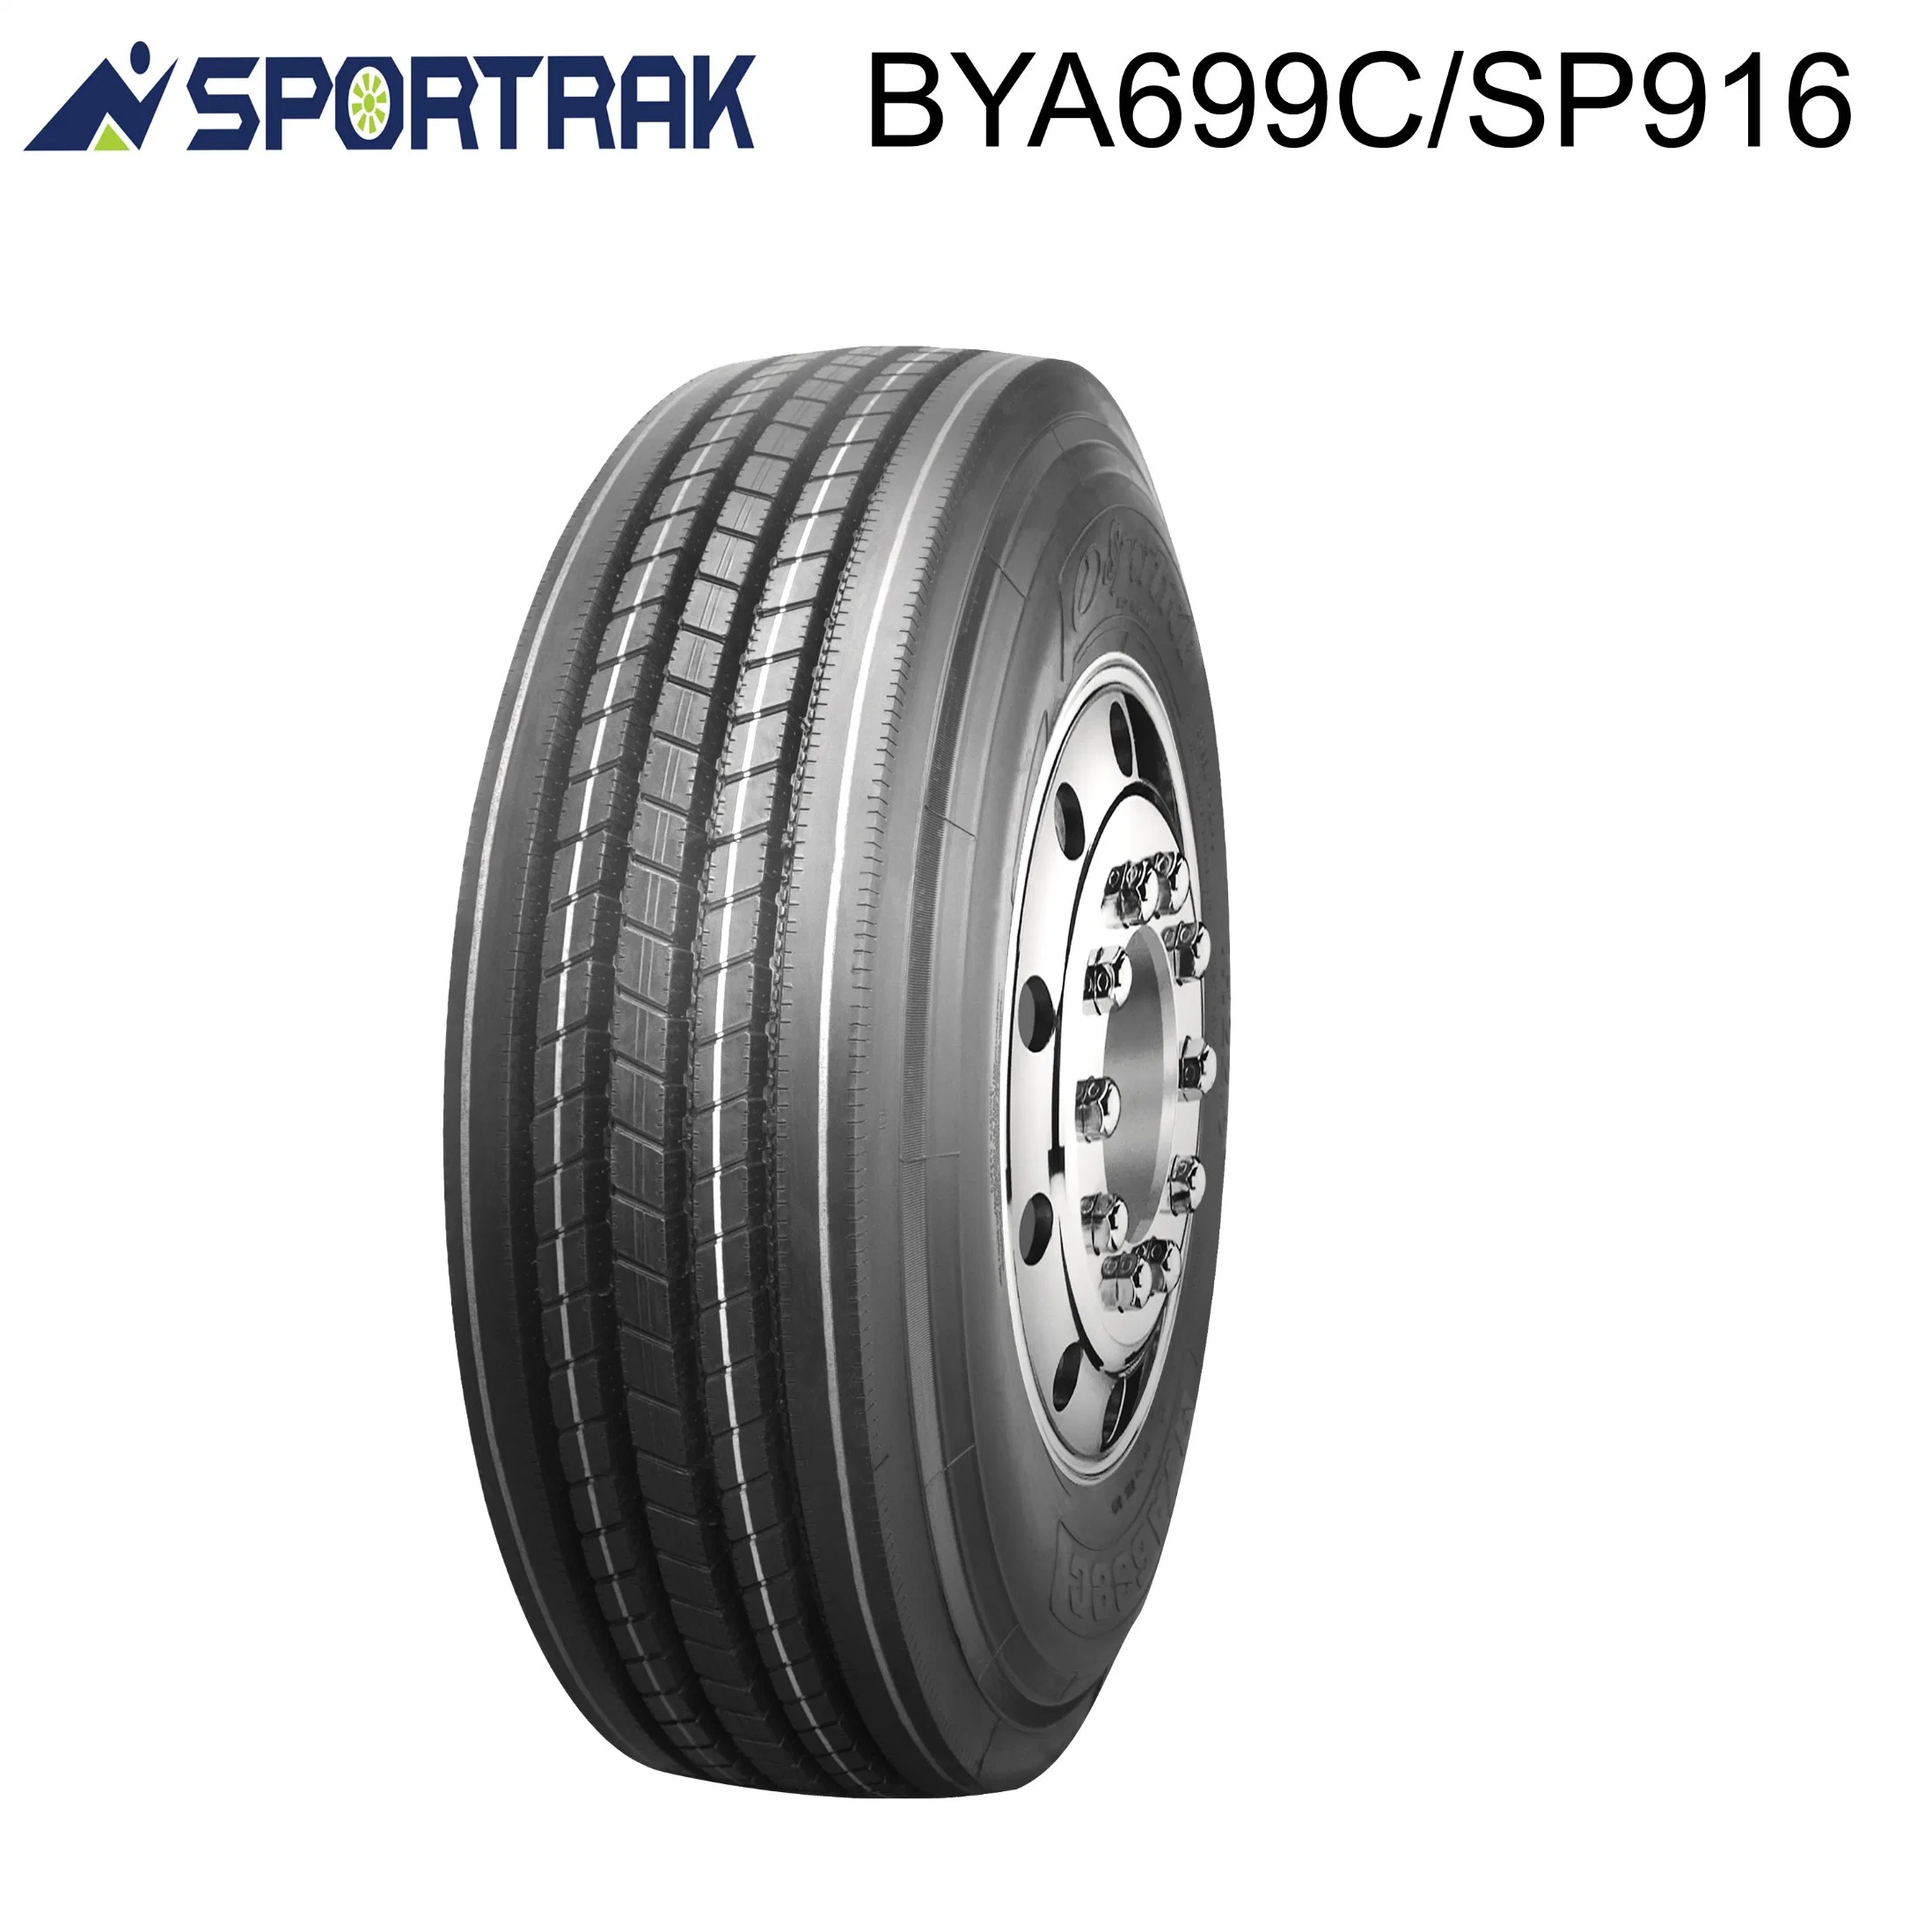 Neumático de Camión Superway Sportrak/ 11r22.5 12r22.5 Las posiciones de neumáticos para camiones Australia